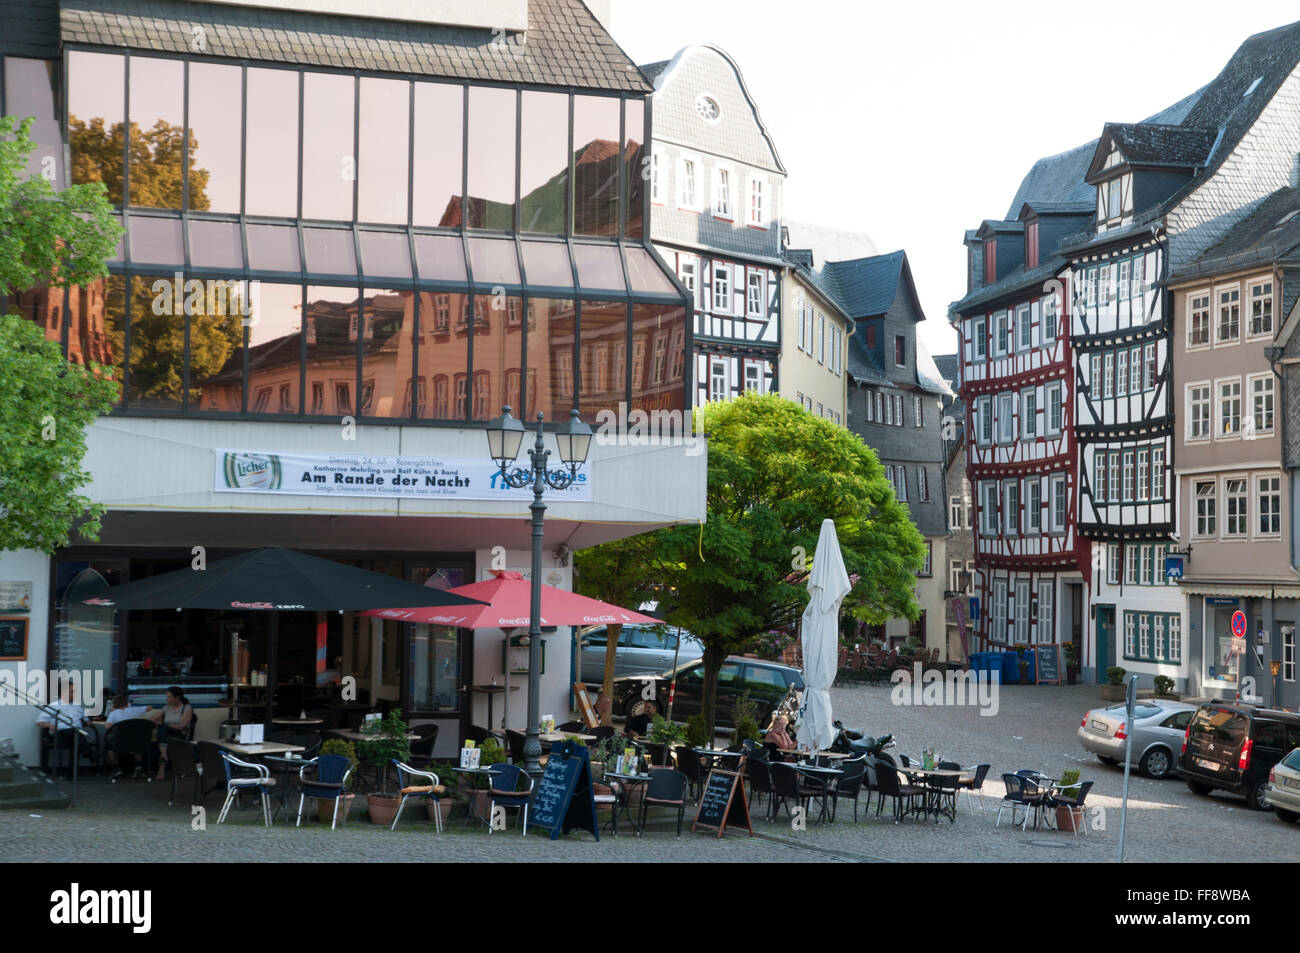 Altstadt, Wetzlar, Hessen, Deutschland | old town of Wetzlar, Hesse, Germany Stock Photo